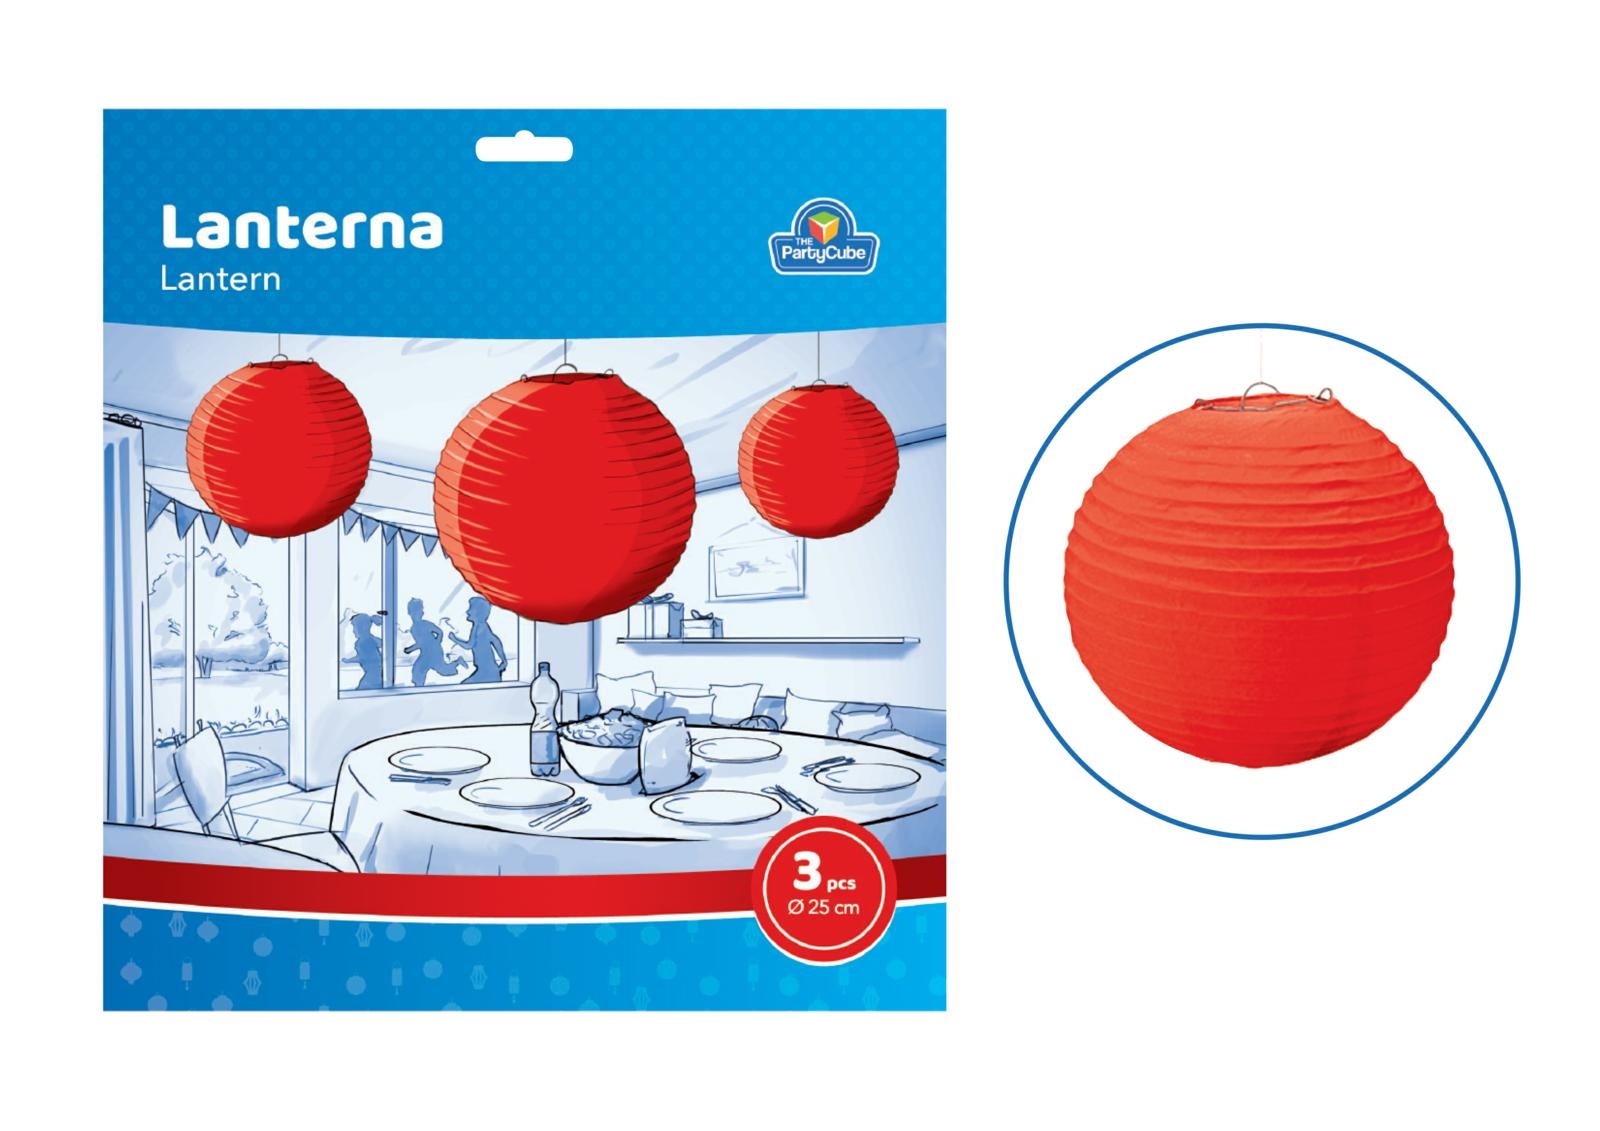  3 pz. lantern round paper RED    25 cm.